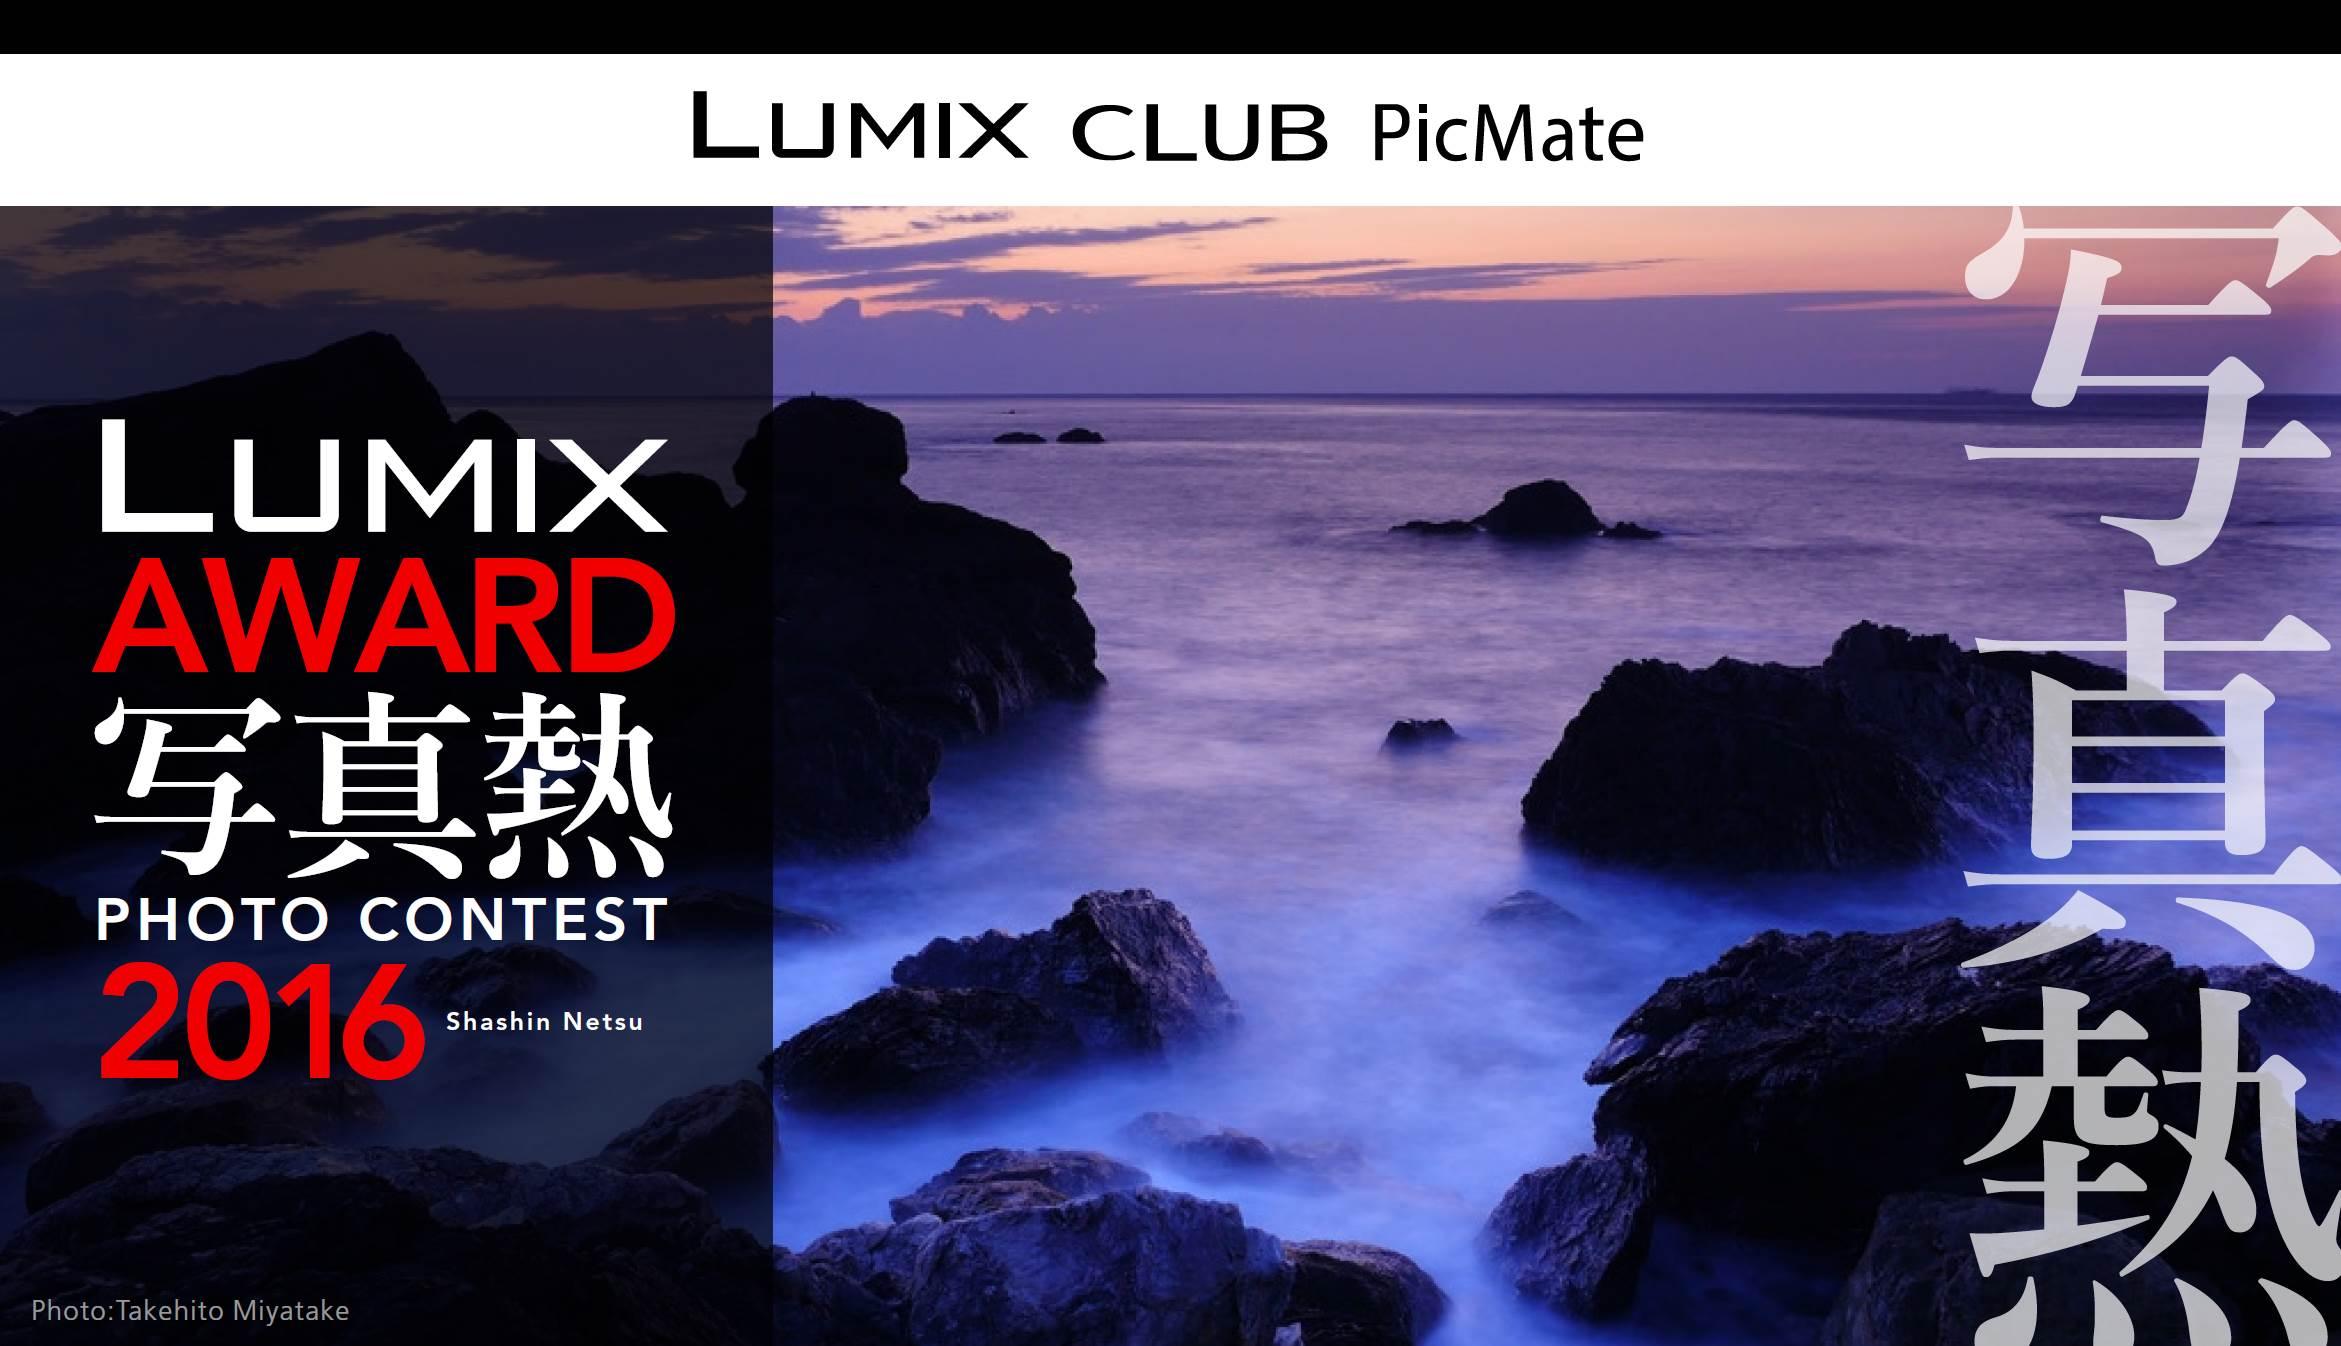 フォトコンテスト「LUMIX AWARD 2016」を開催～「写真熱」をテーマに作品募集